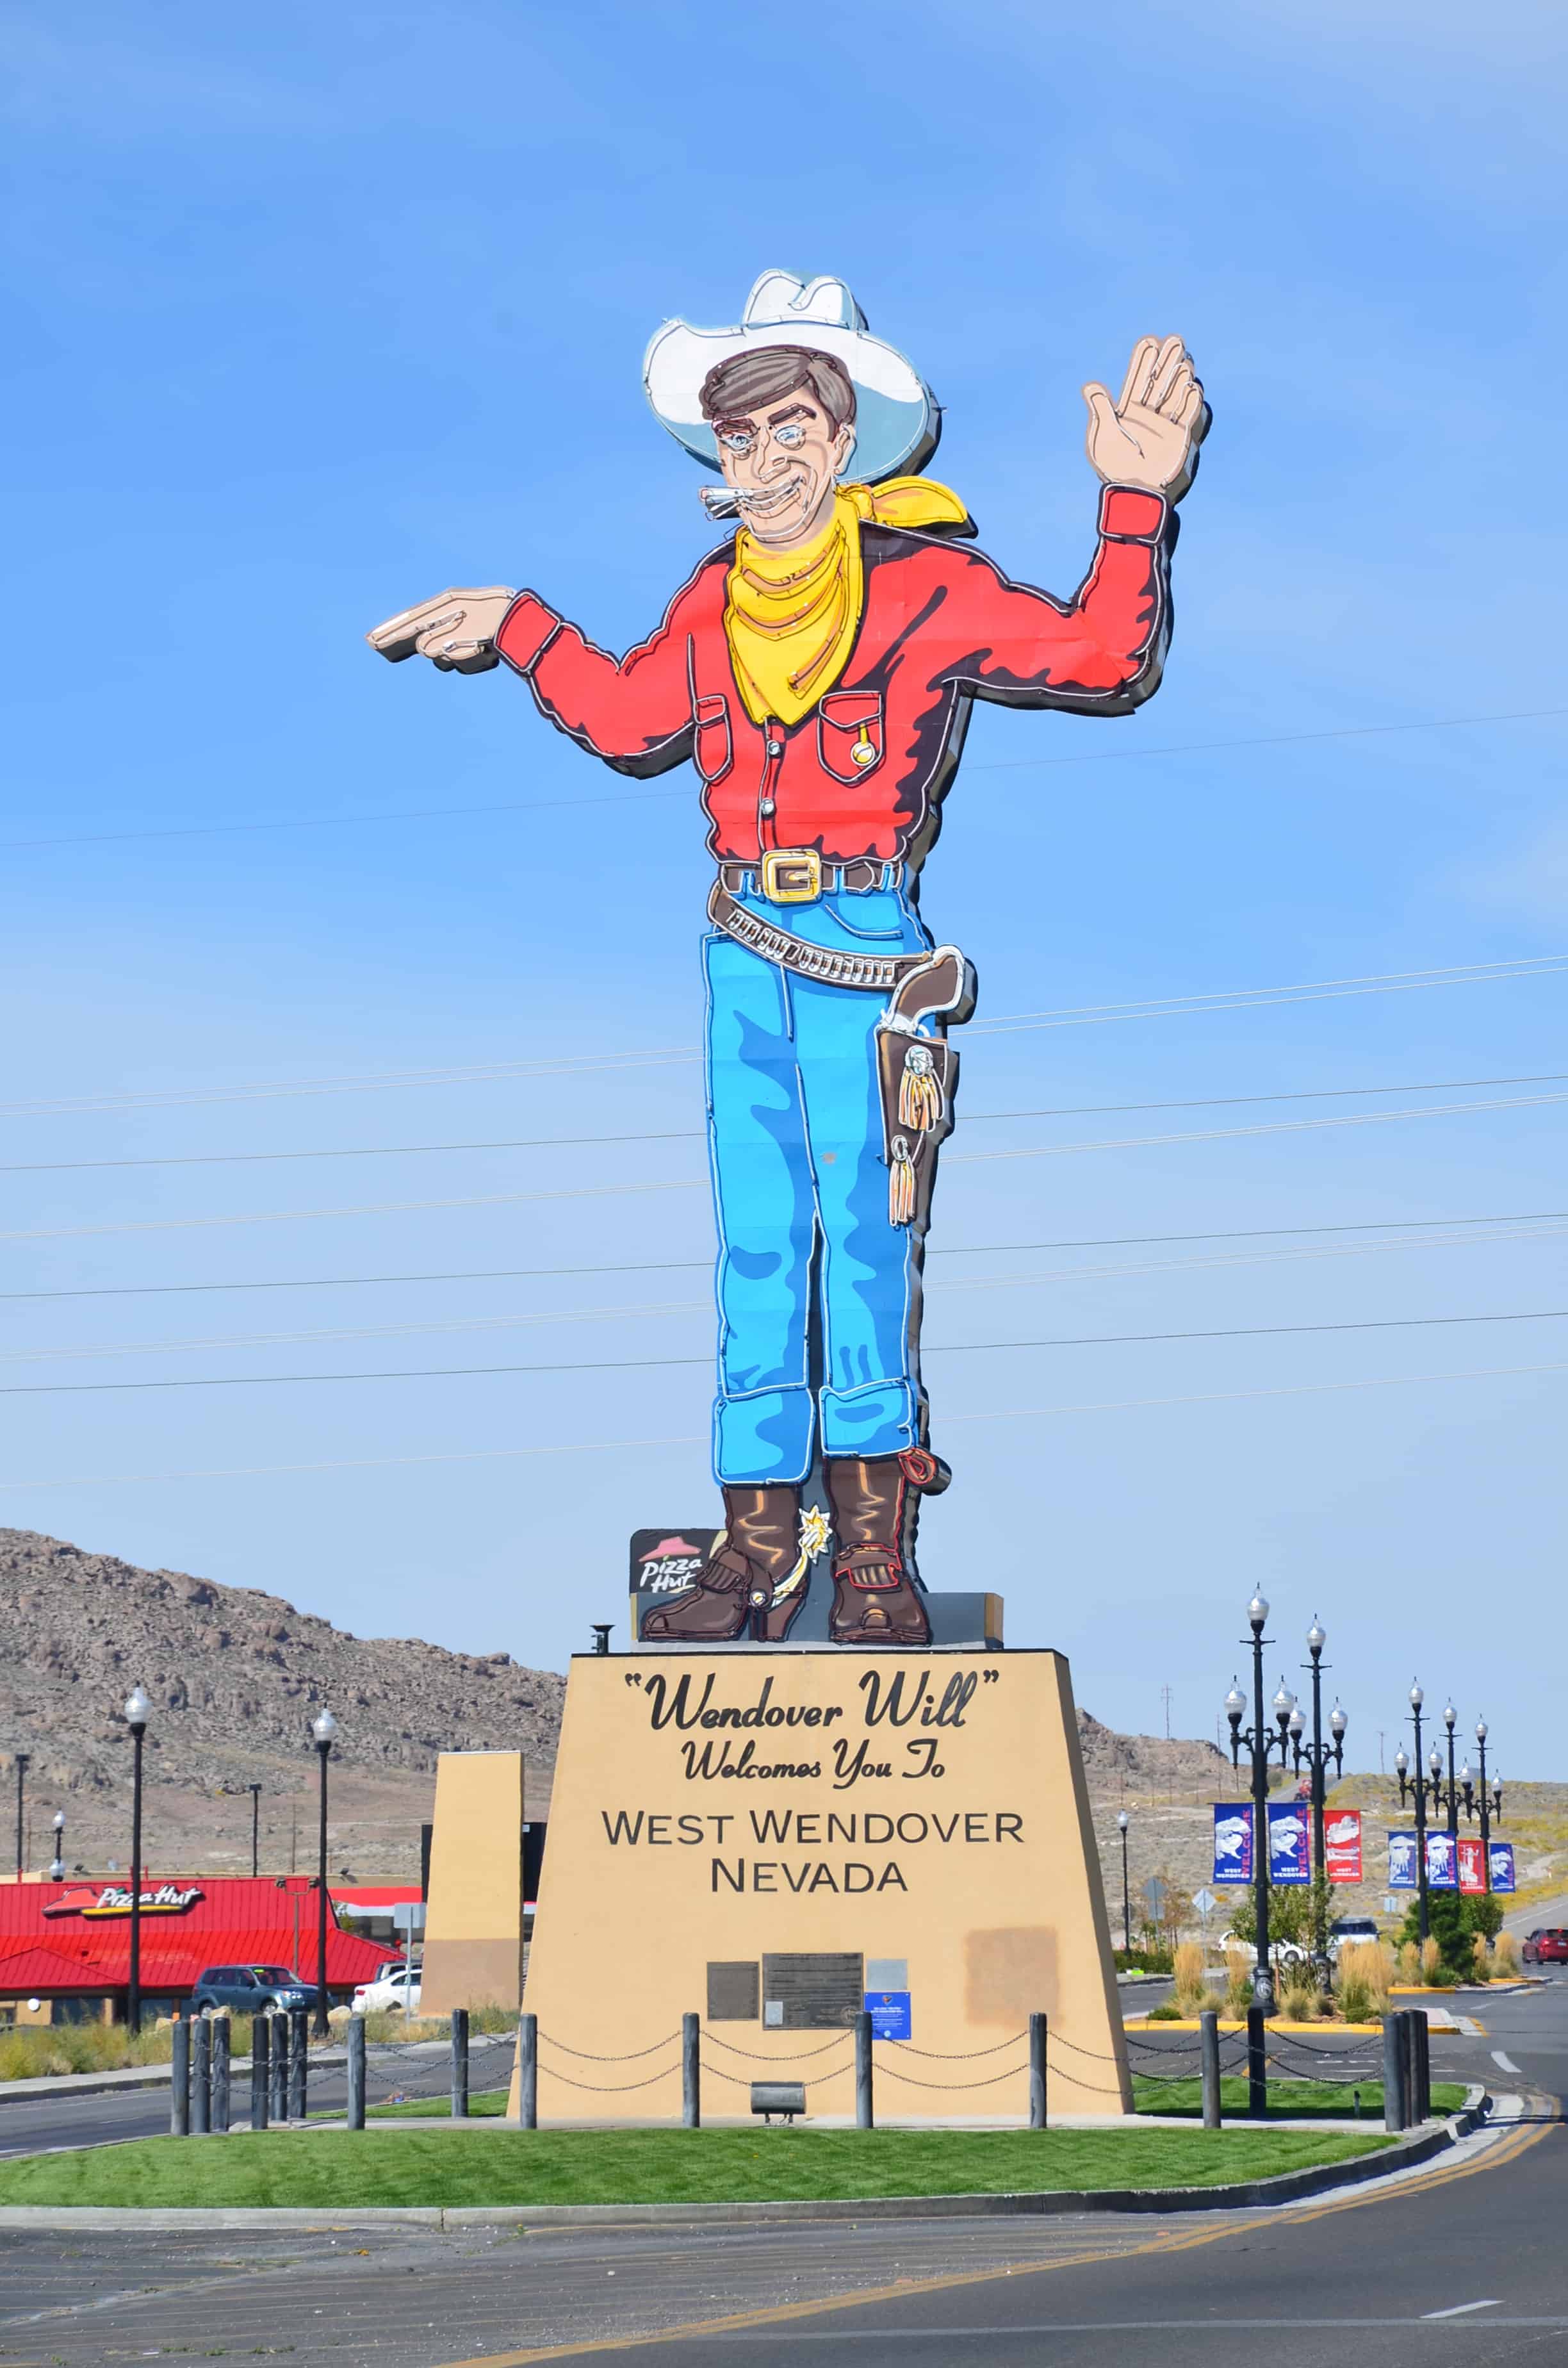 Wendover Will in West Wendover, Nevada